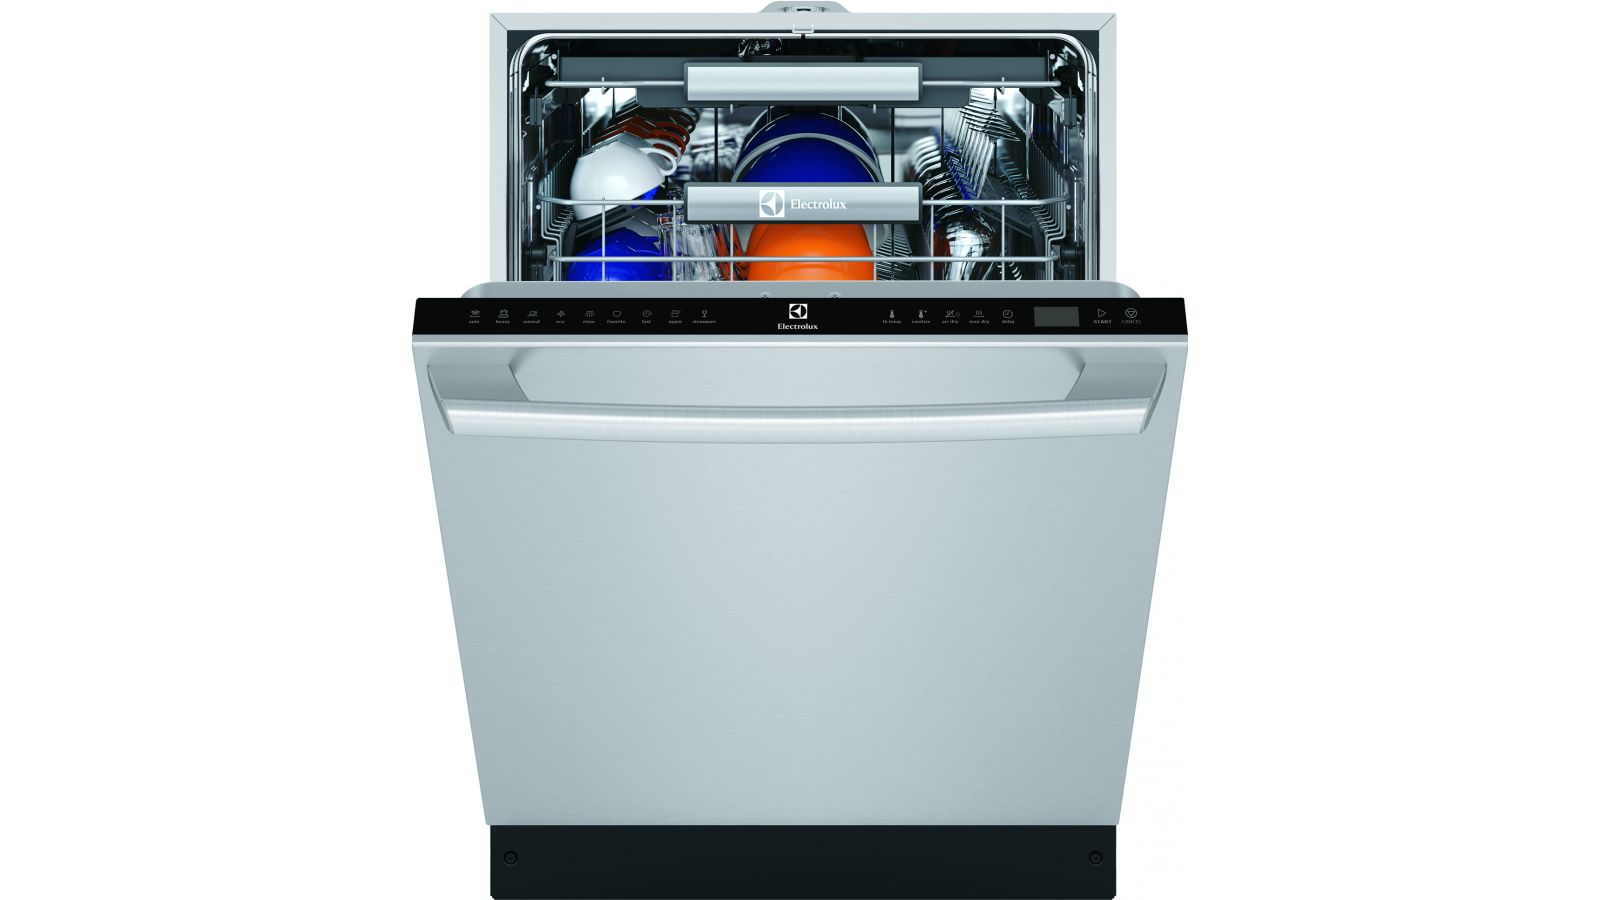 Electrolux Dishwasher with SatelliteSpray Technology